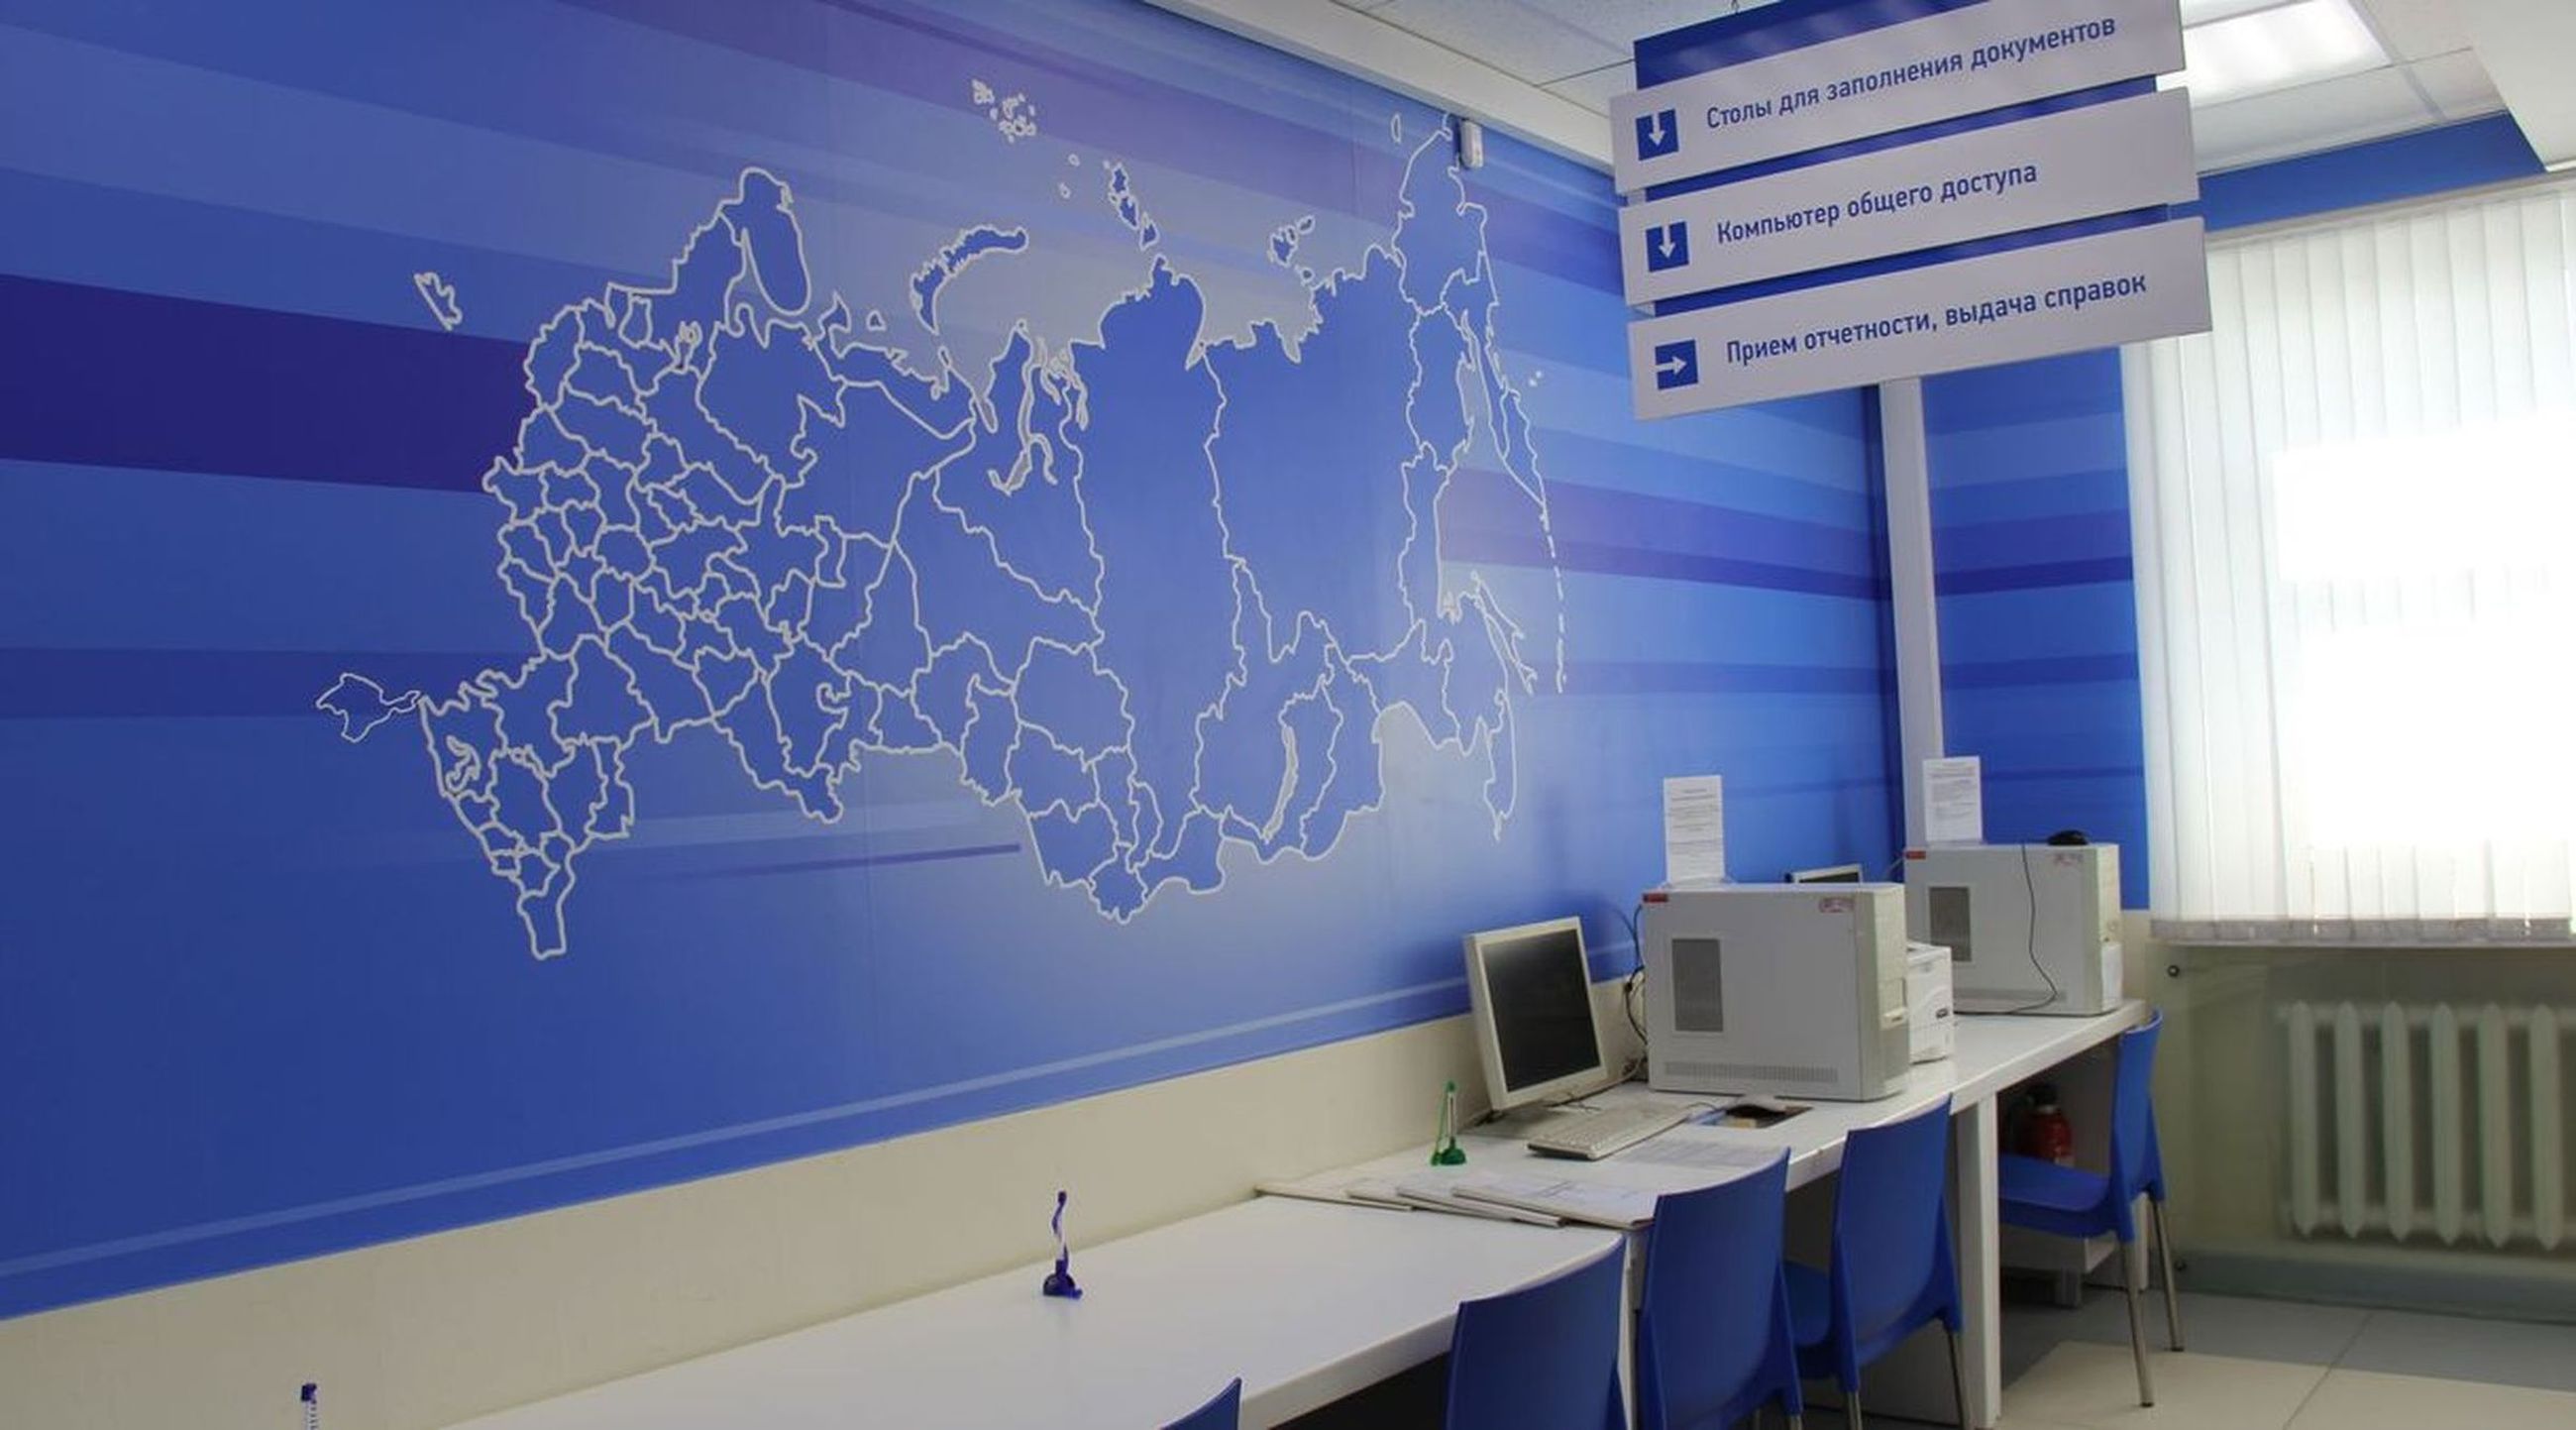  В Обособленном подразделении предусмотрены места для заполнения деклараций и заявлений, также доступен гостевой компьютер с доступом к сервисам официального сайта ФНС России 